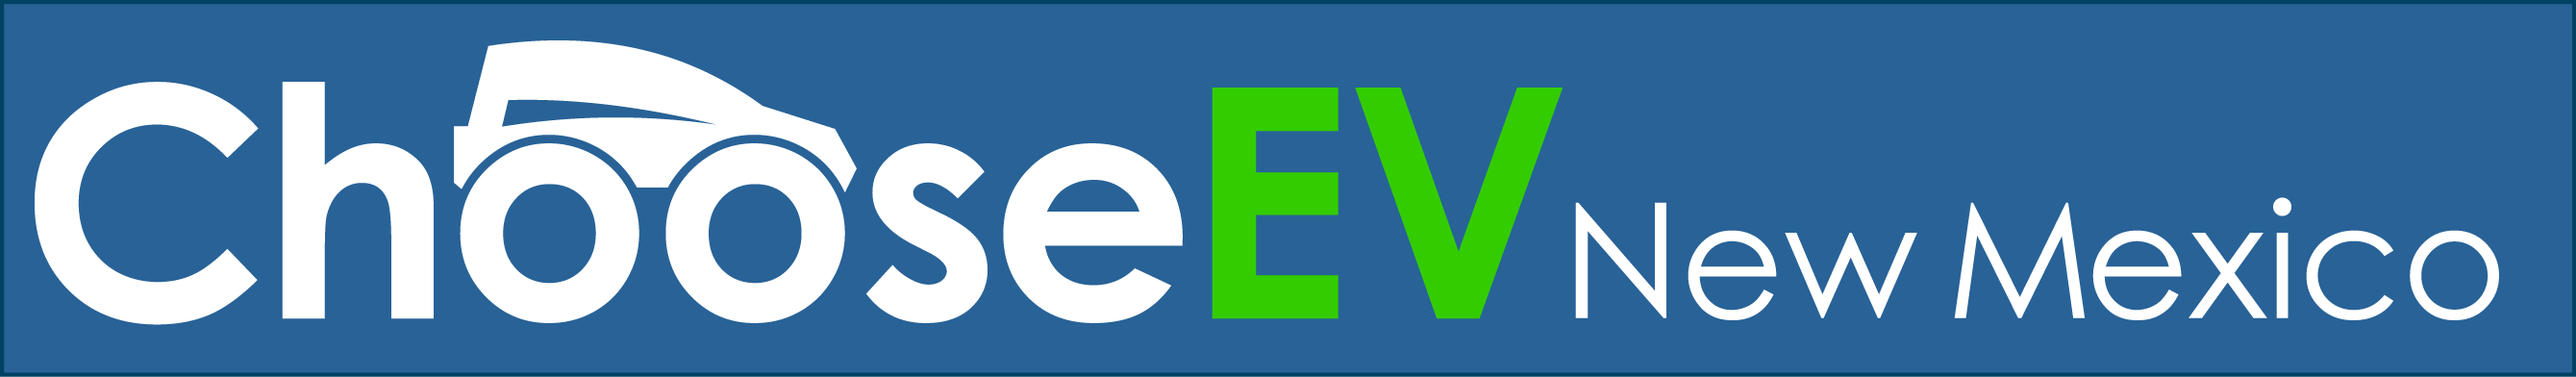 EV